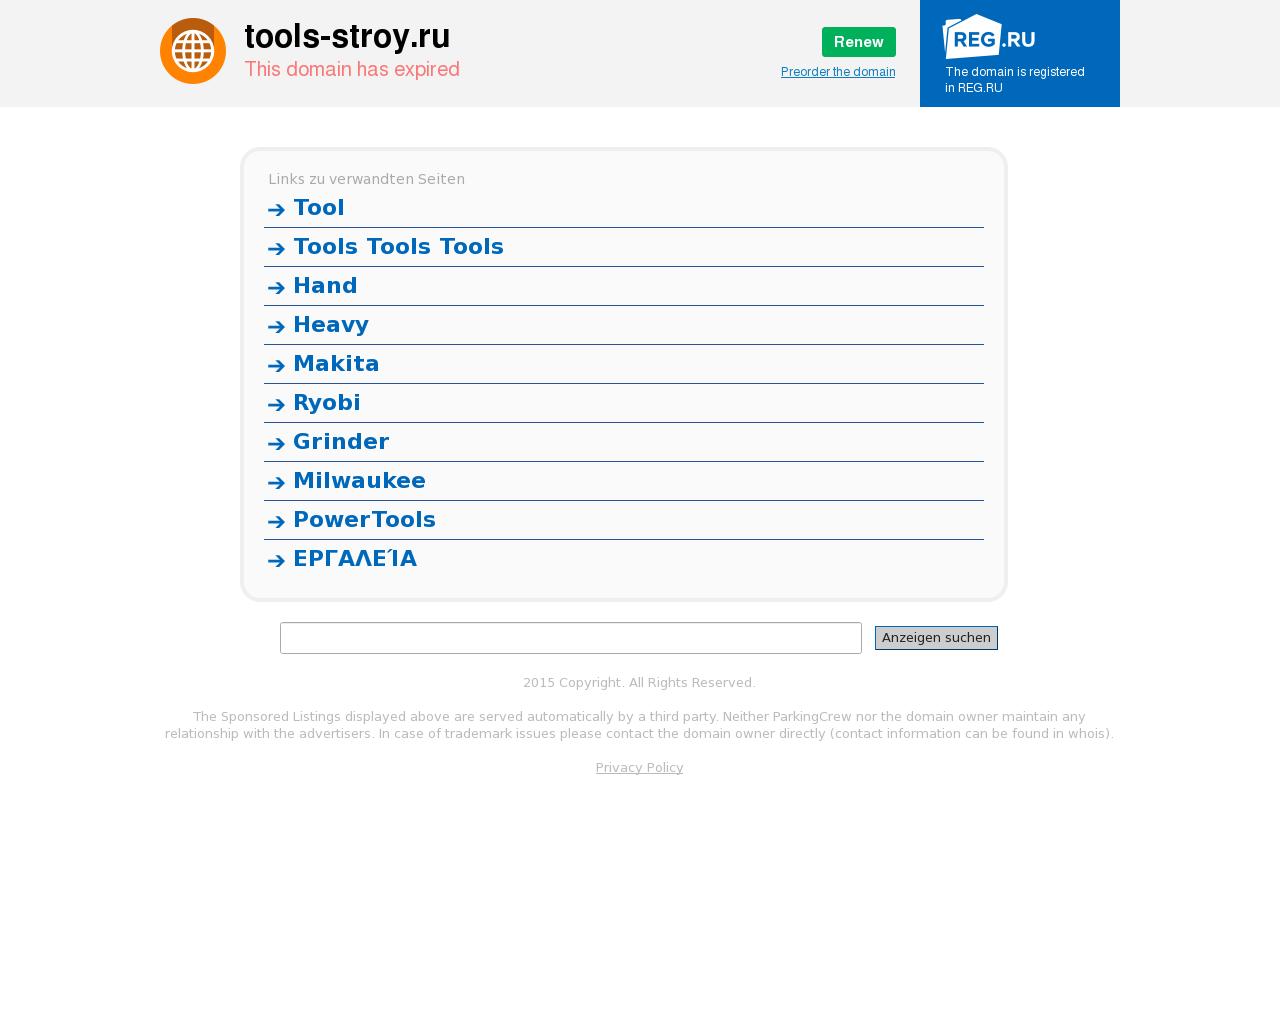 Изображение сайта tools-stroy.ru в разрешении 1280x1024